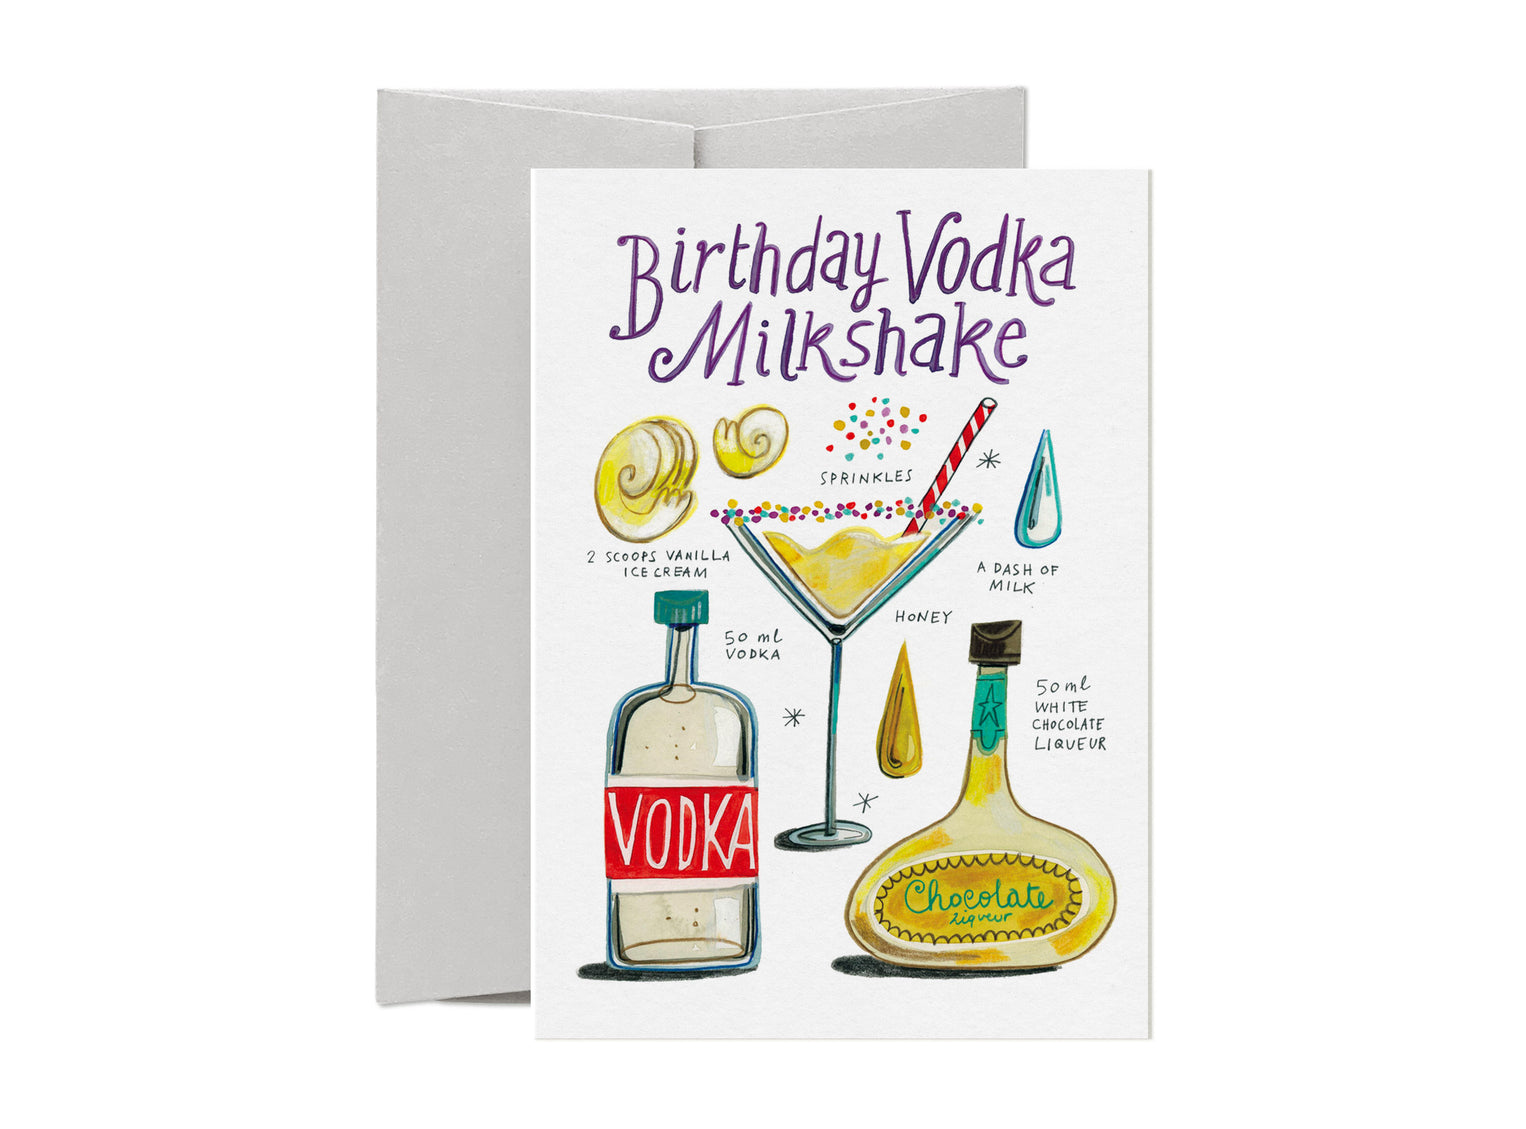 Vodka Milkshake